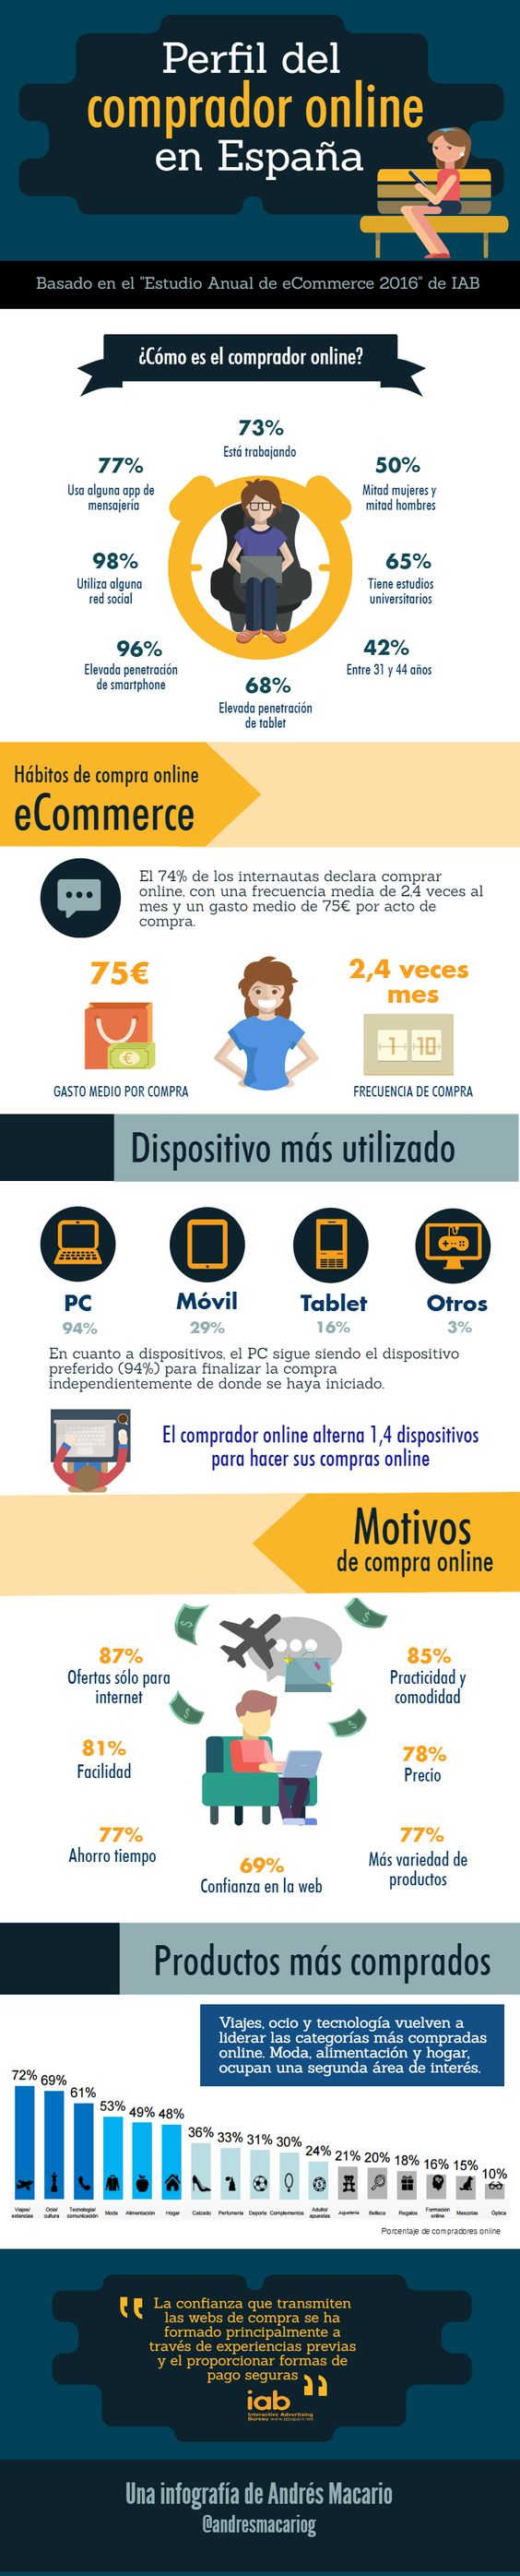 cómo son los compradores online en España-infografia